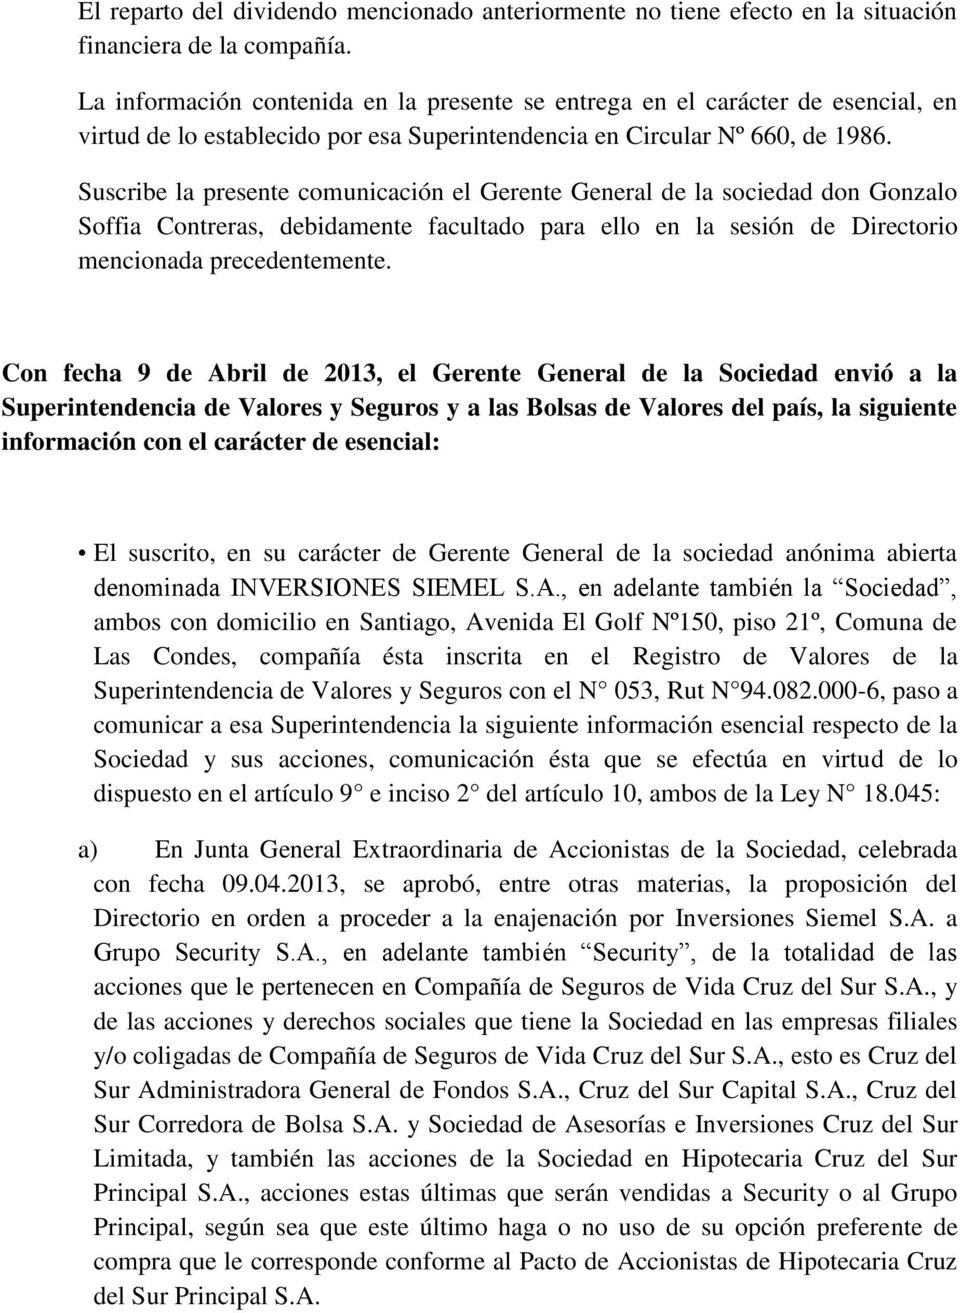 Suscribe la presente comunicación el Gerente General de la sociedad don Gonzalo Soffia Contreras, debidamente facultado para ello en la sesión de Directorio mencionada precedentemente.